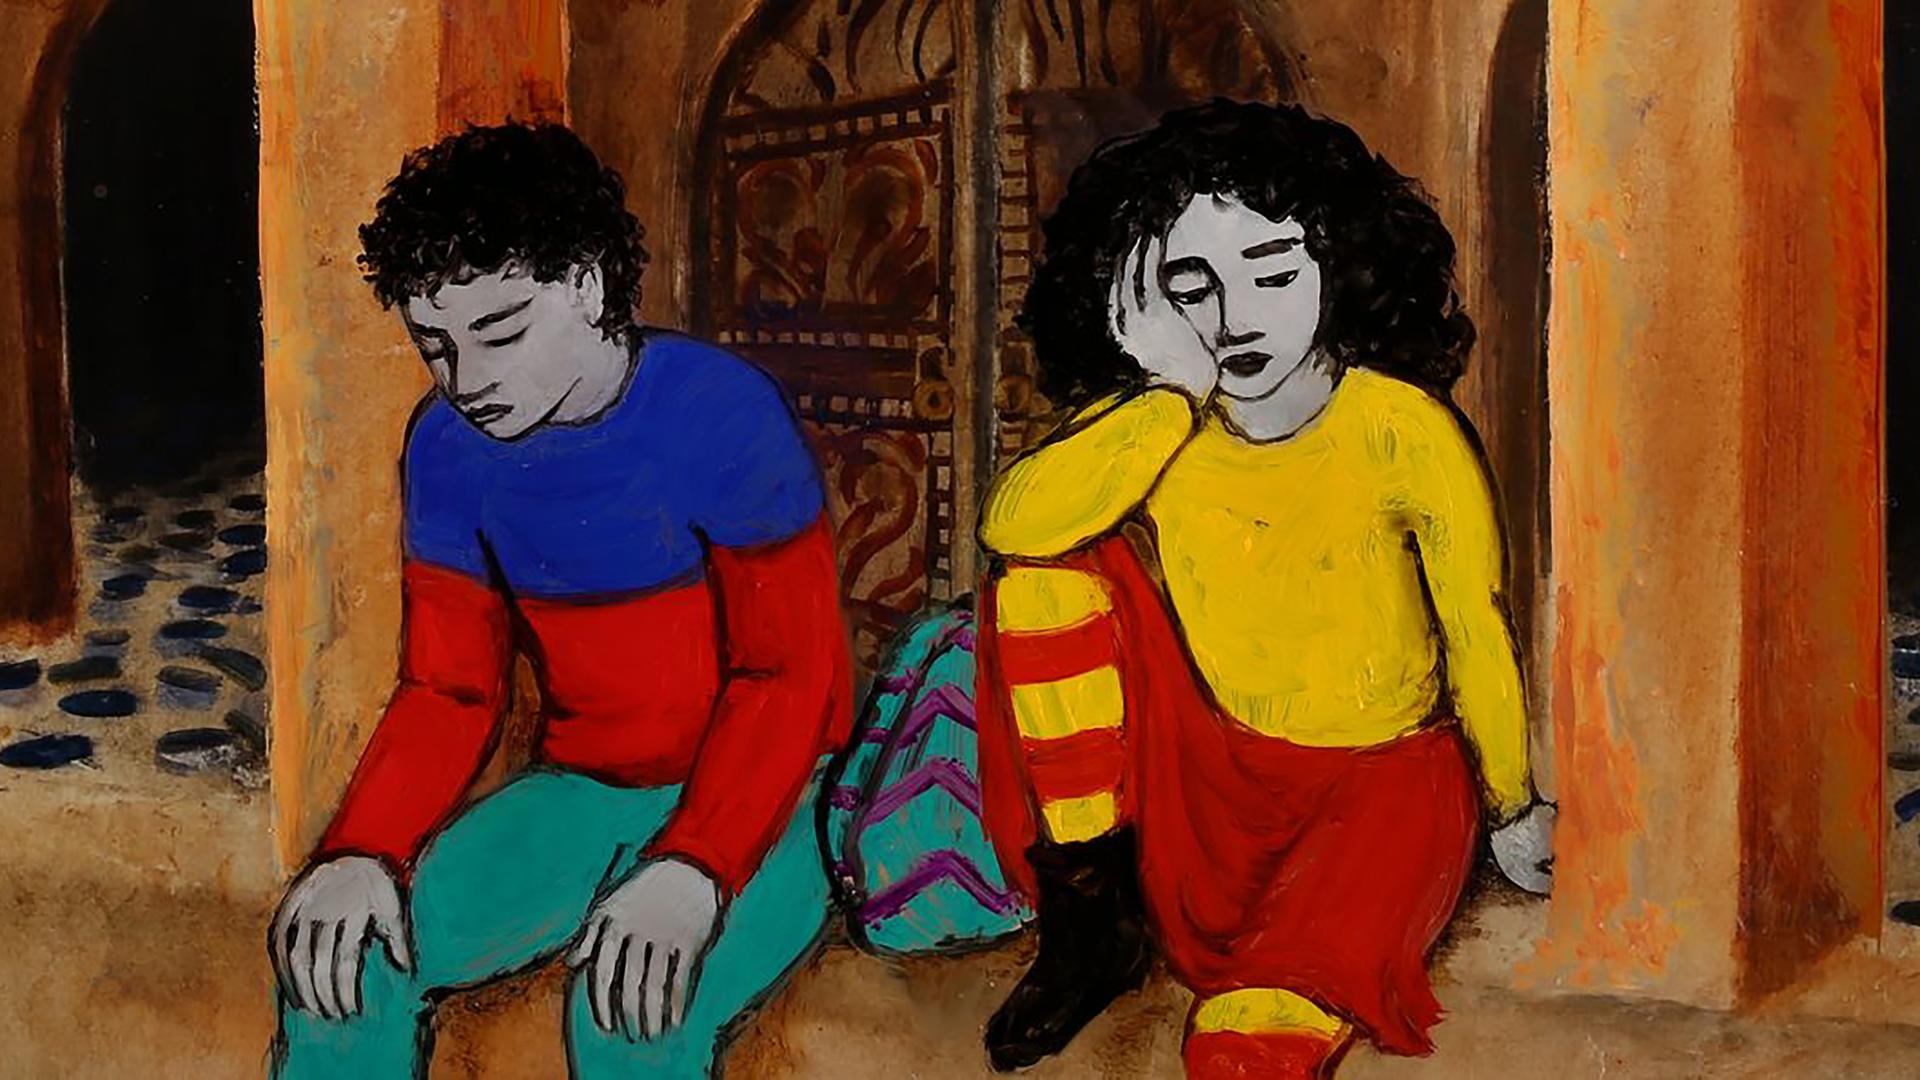 Eine farbenfrohe Illustration von einem Mädchen und einem Jungen, die nebeneinander sitzen und in Gedanken versunken sind.